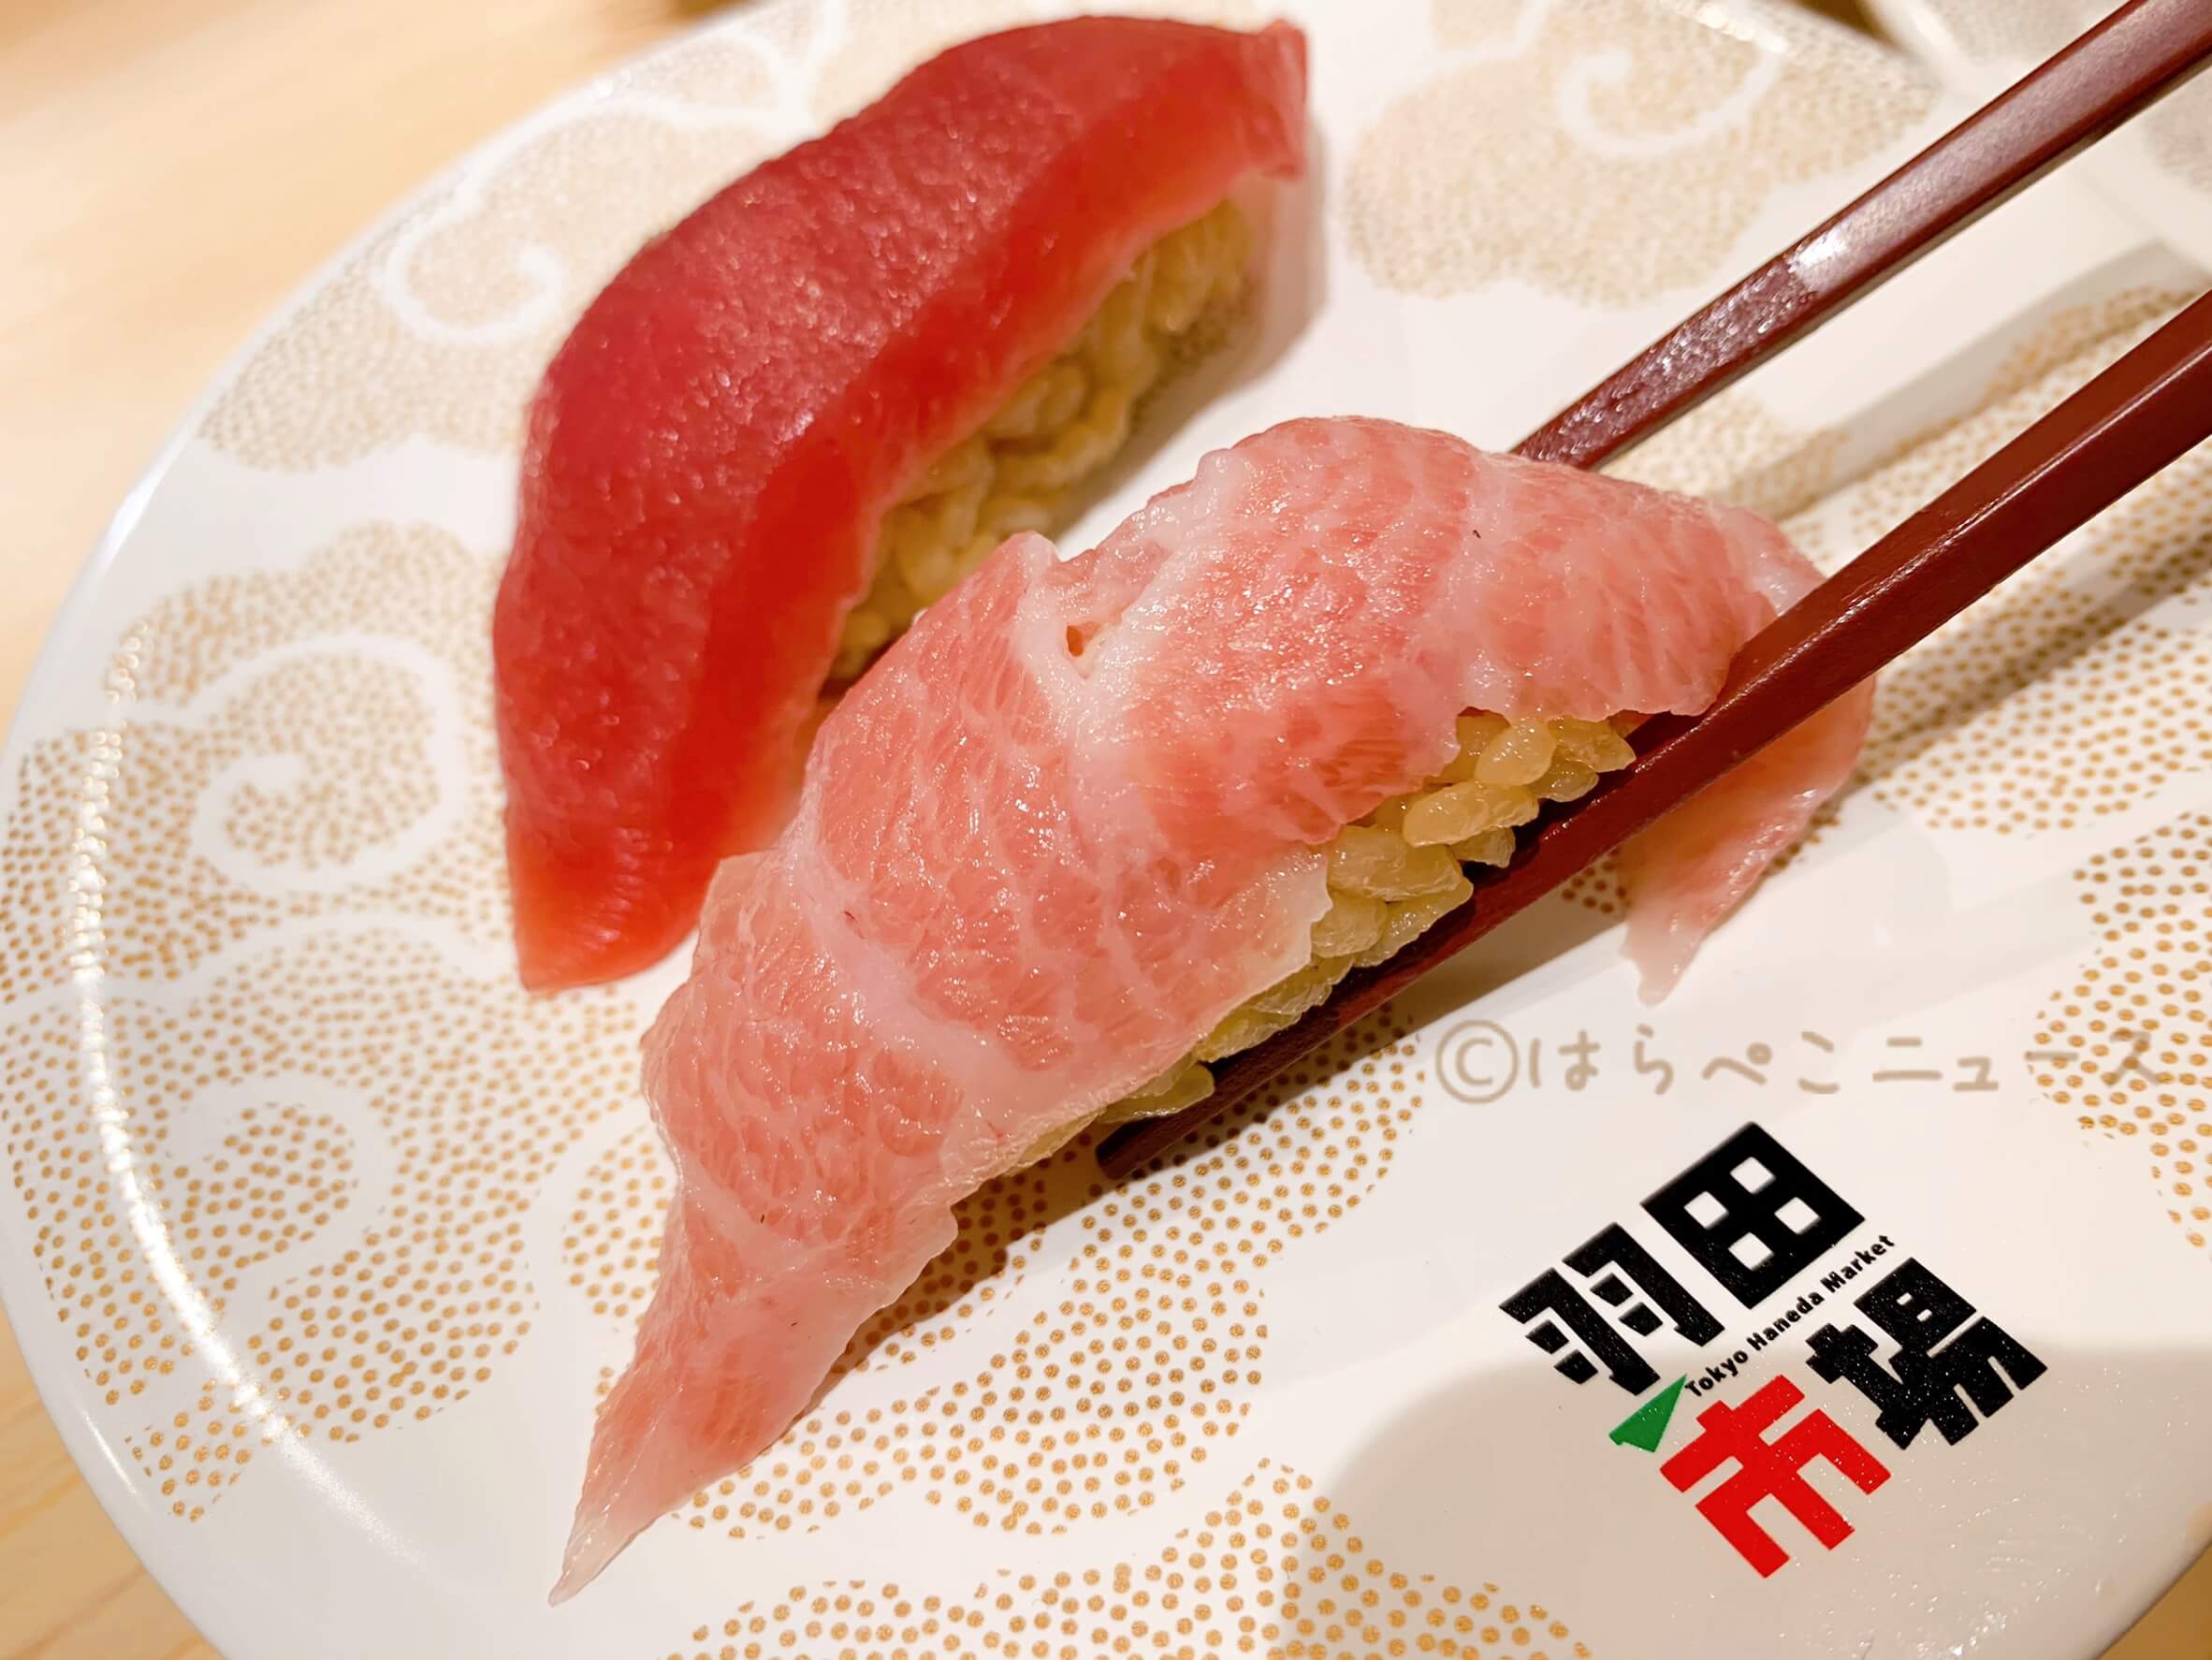 実食レポ 回転寿司 羽田市場 本まぐろ3貫握り 生うに軍艦 ヒラメ漬け 赤酢使用のシャリと鮮魚の鮨 はらぺこニュース